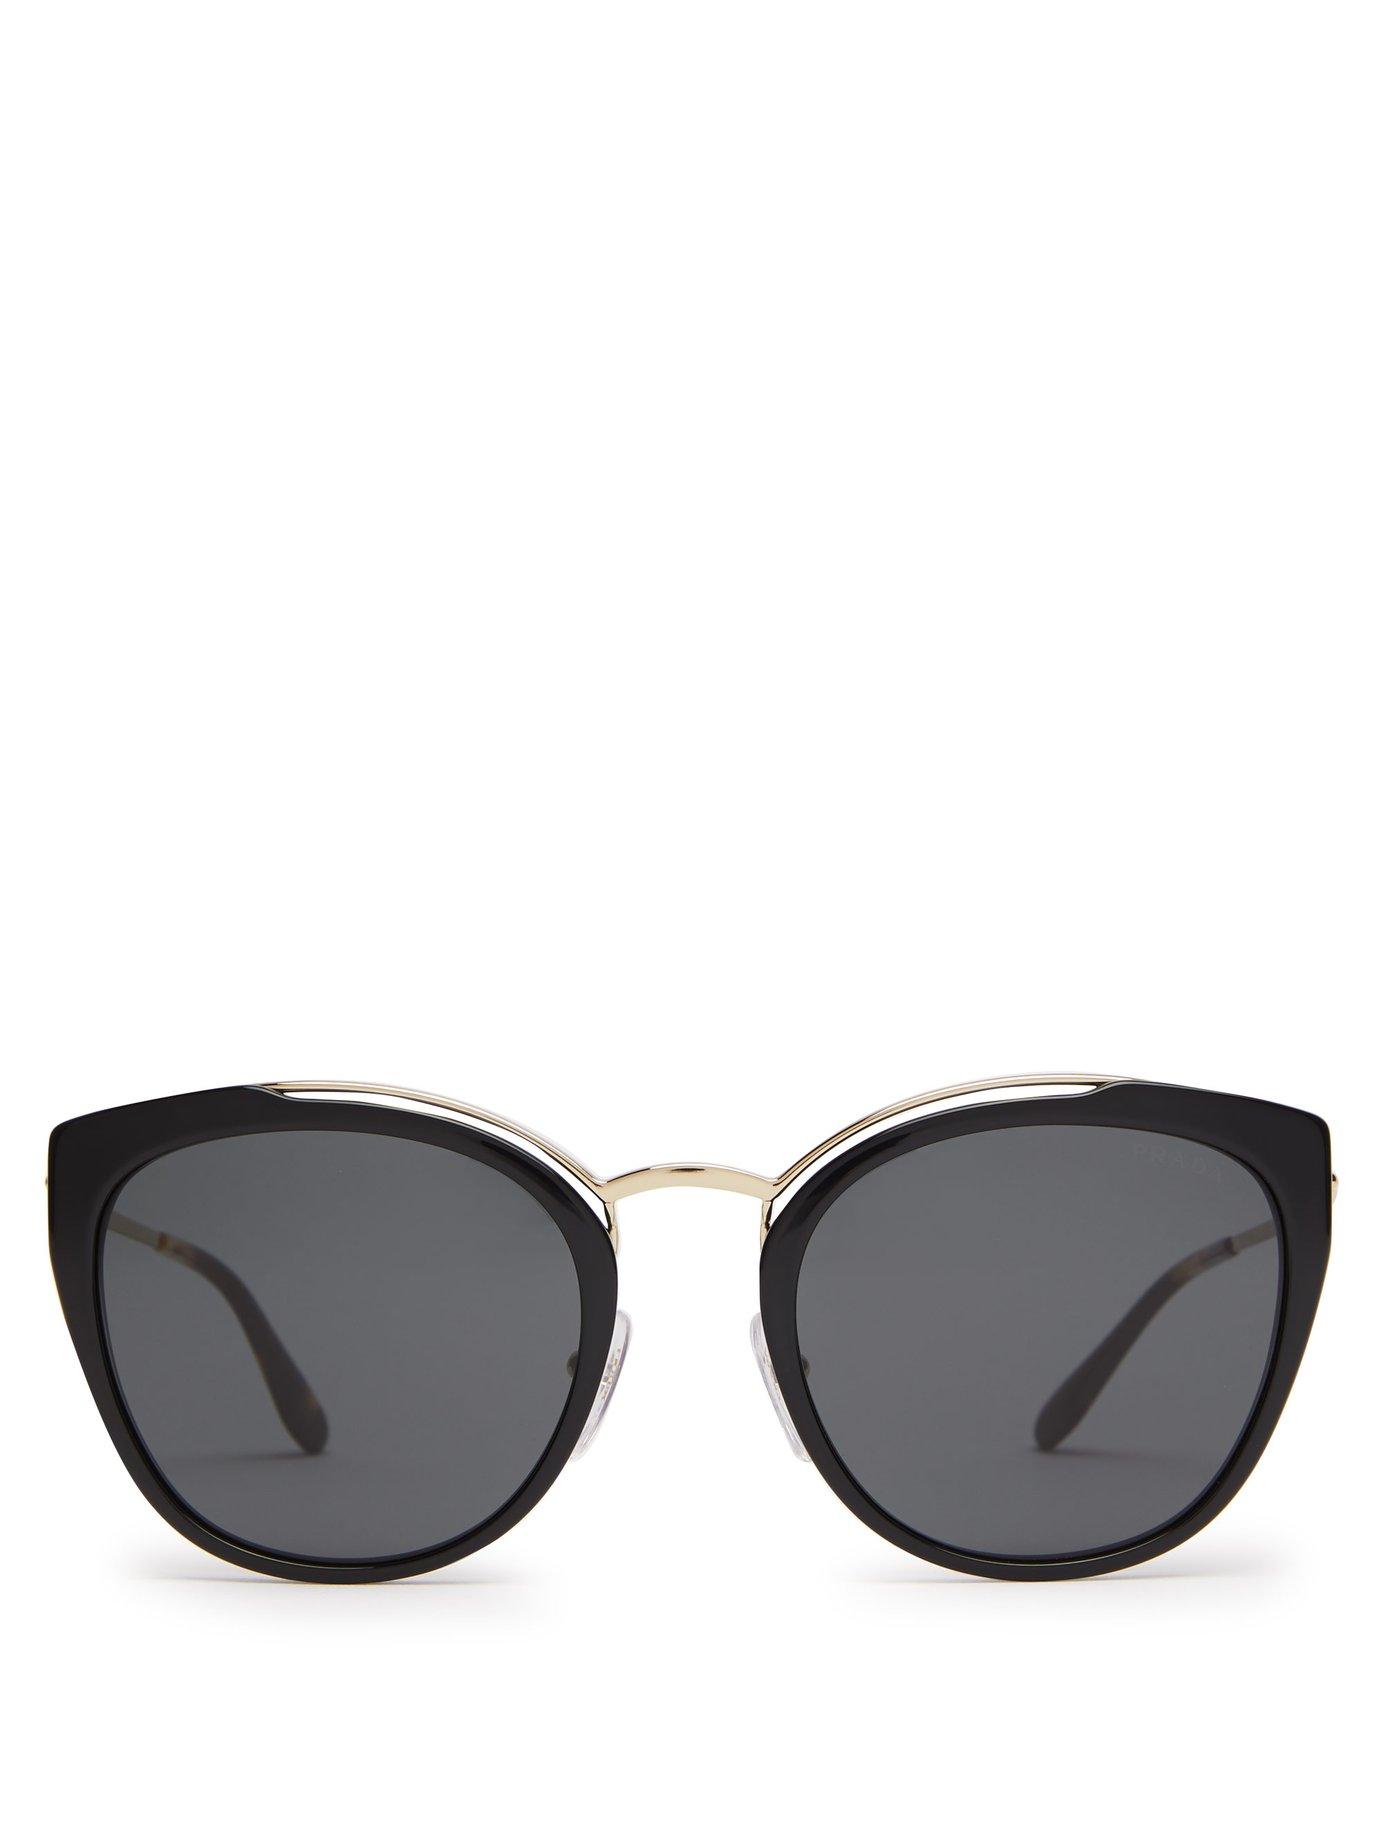 Prada Cat Eye Acetate And Metal Sunglasses in Black | Lyst